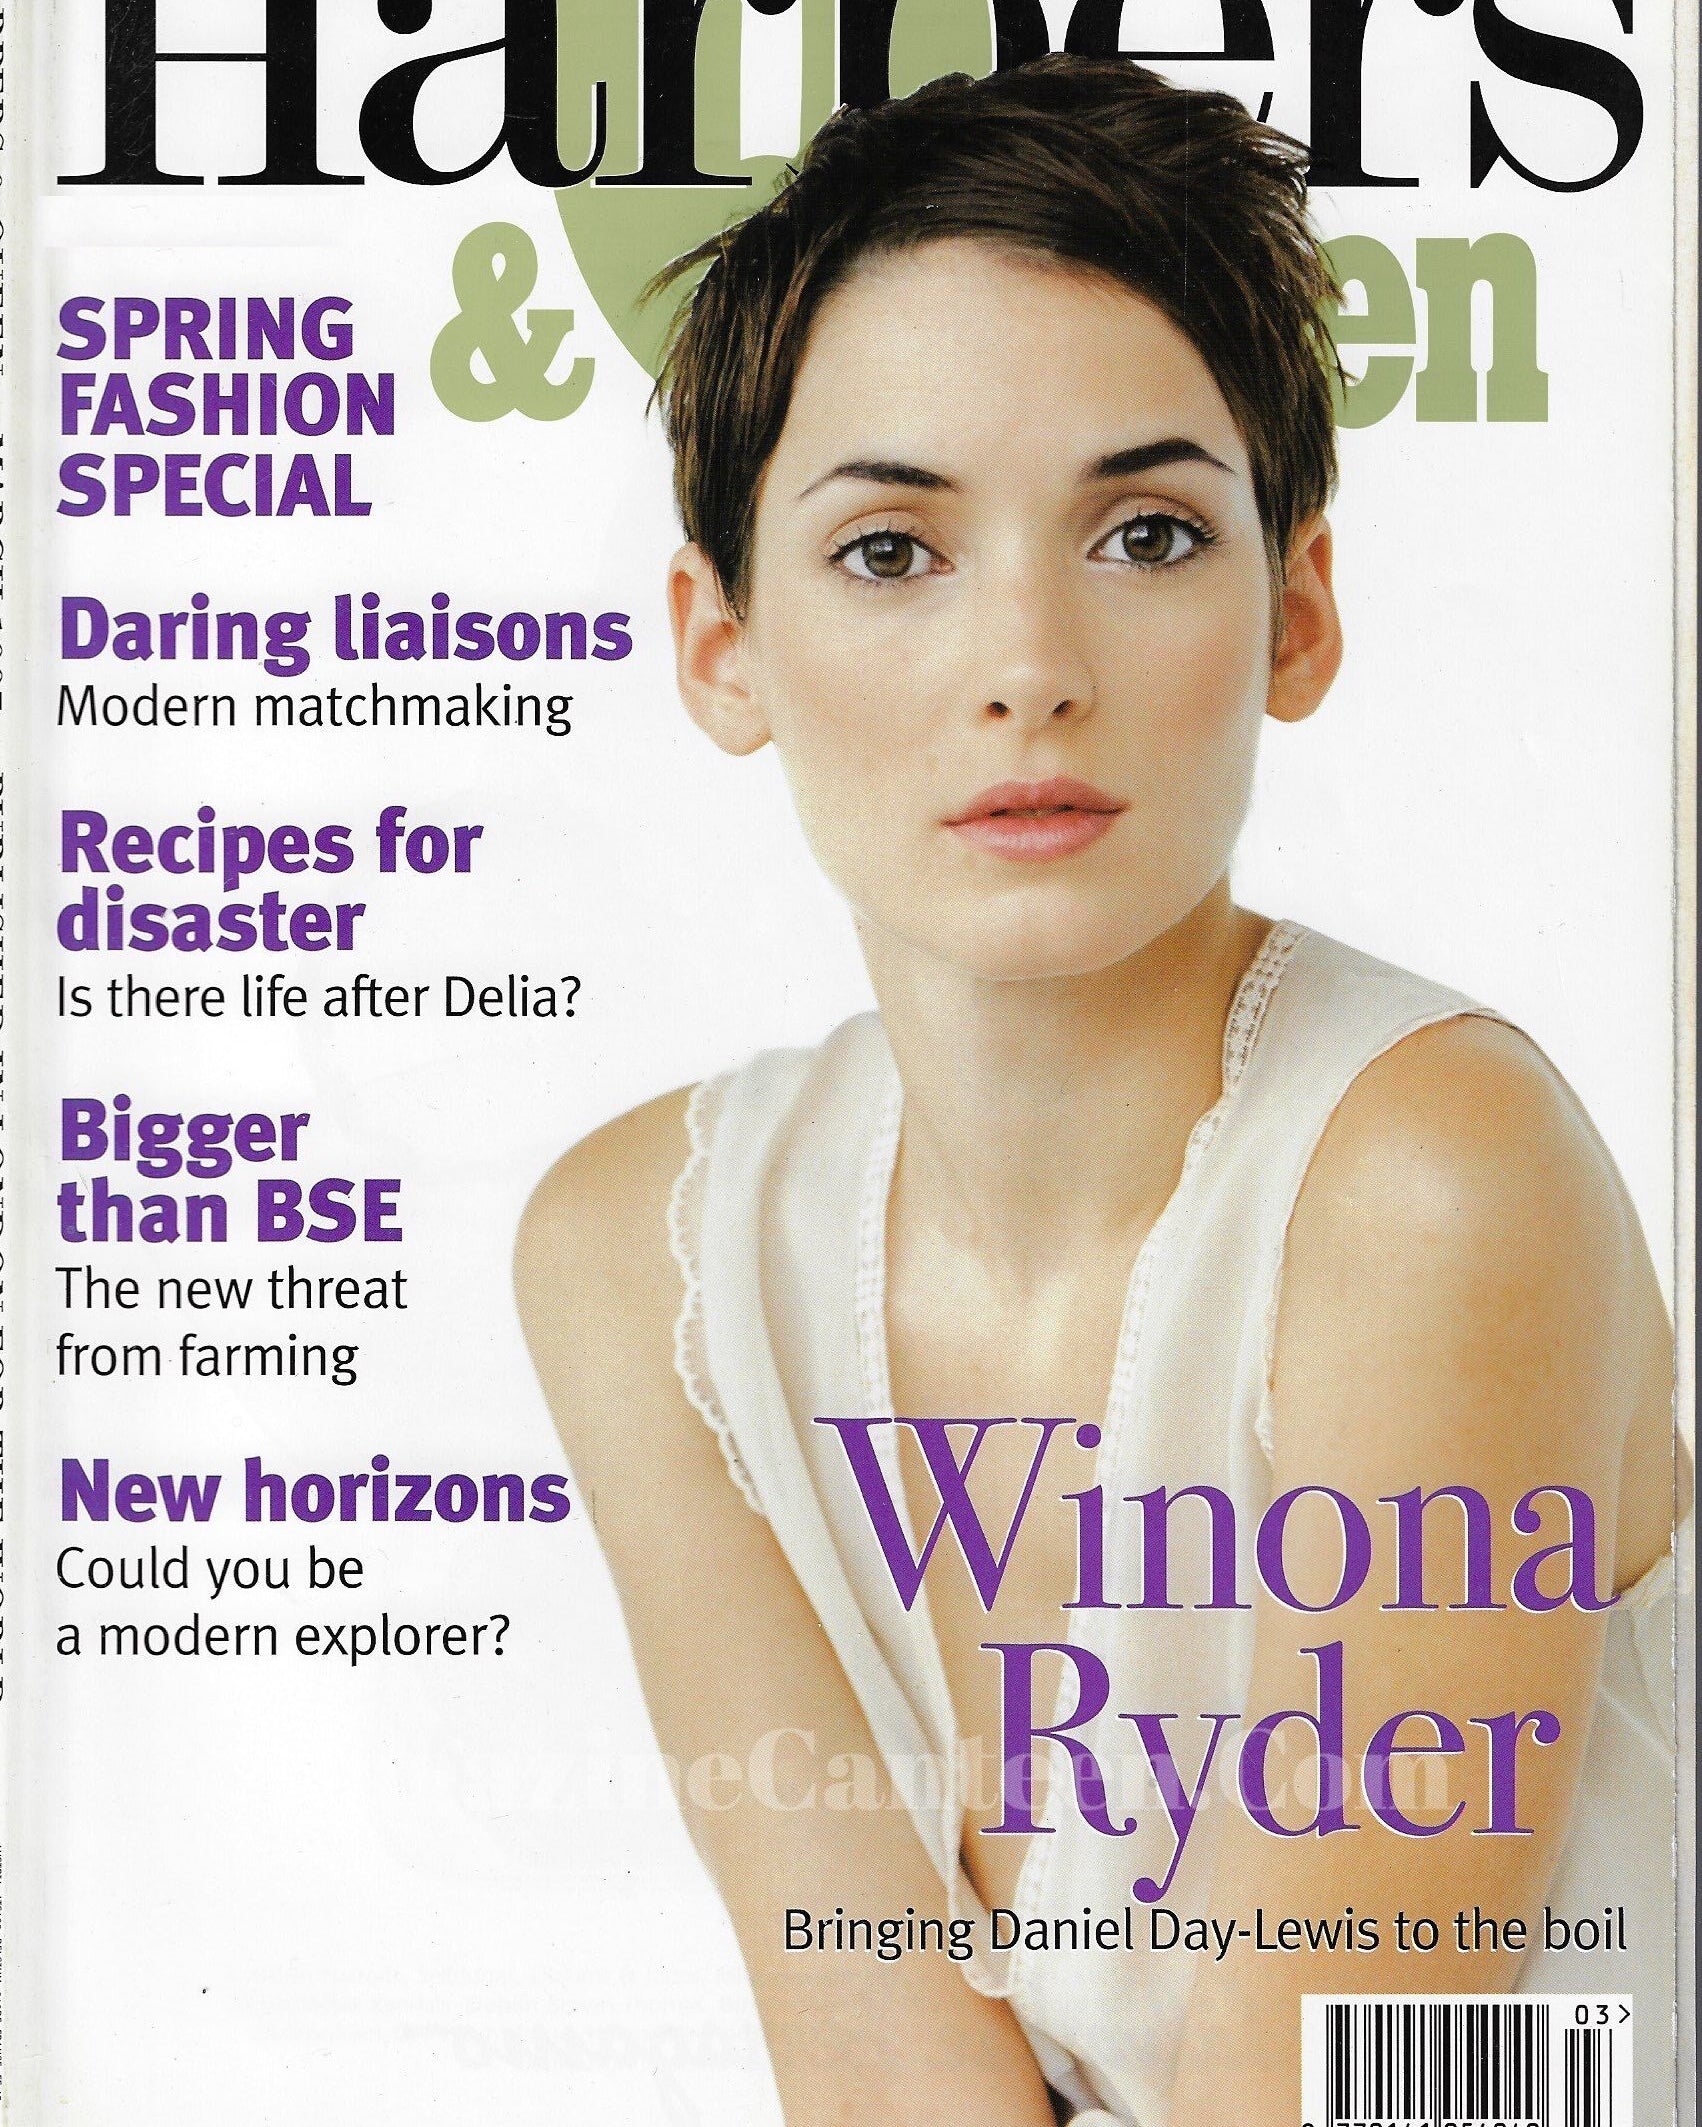 Harpers & Queen Magazine - Winona Ryder